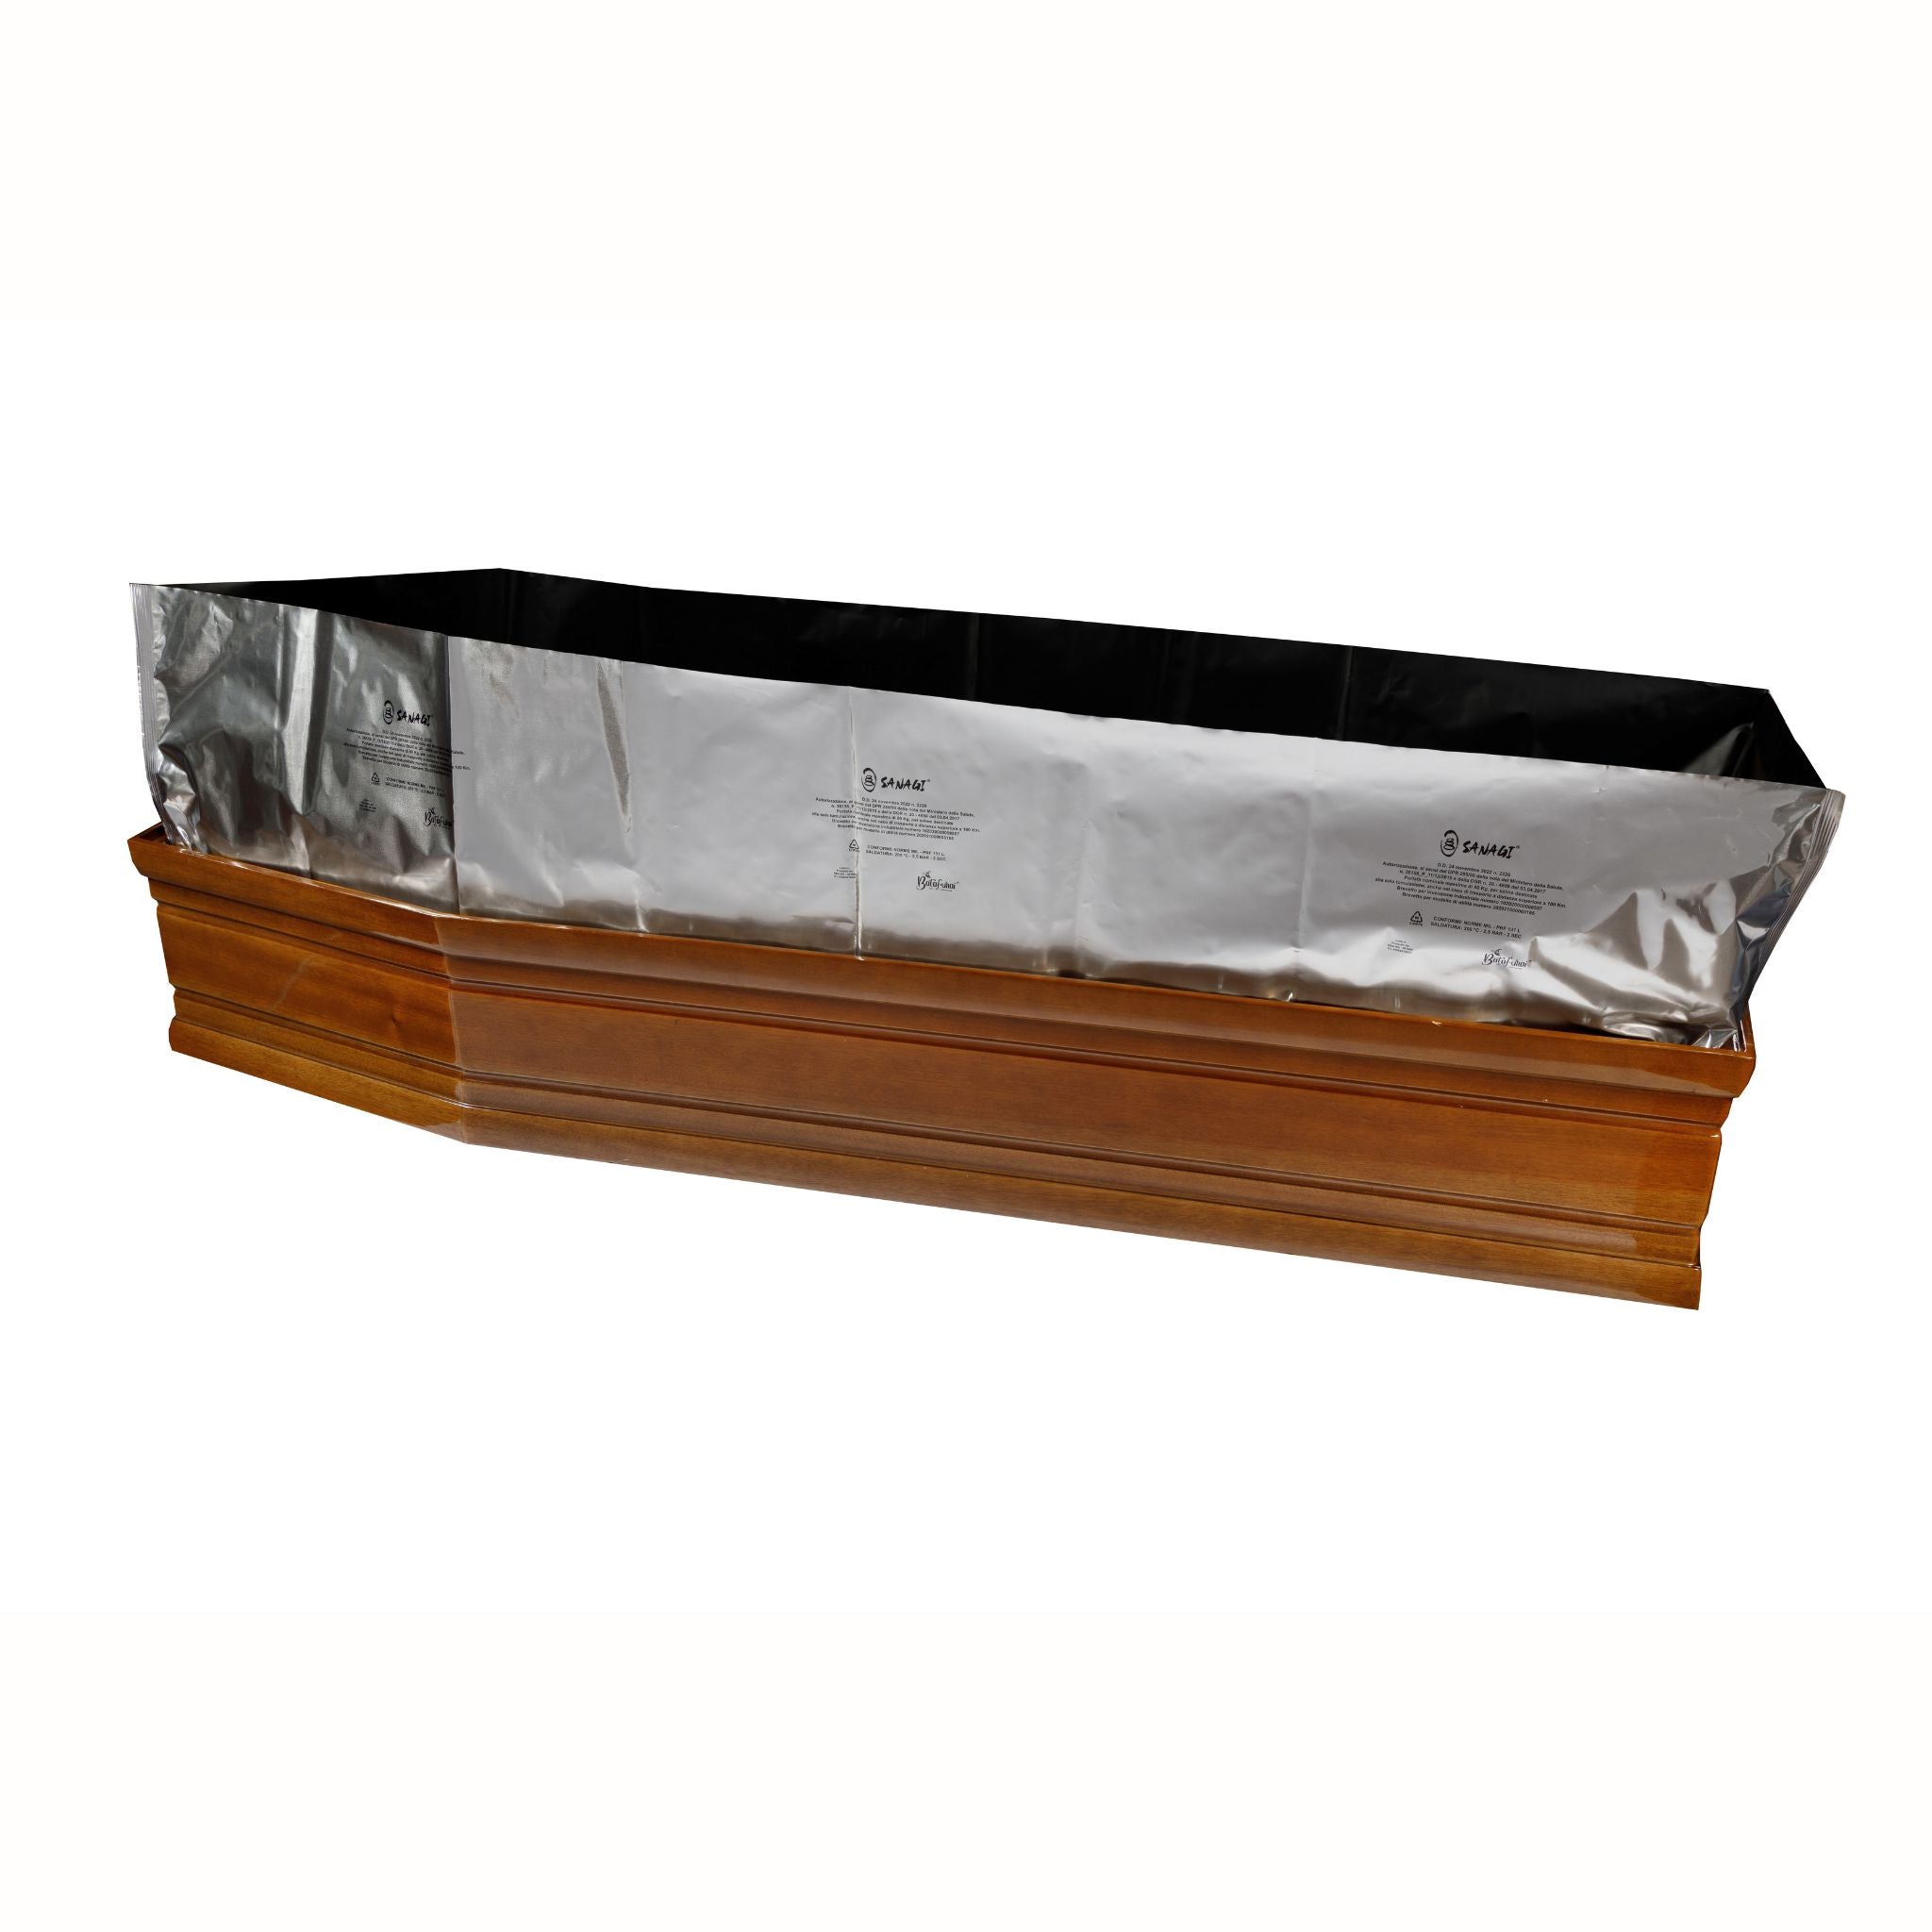 Ceabis foil coffin Sanagi